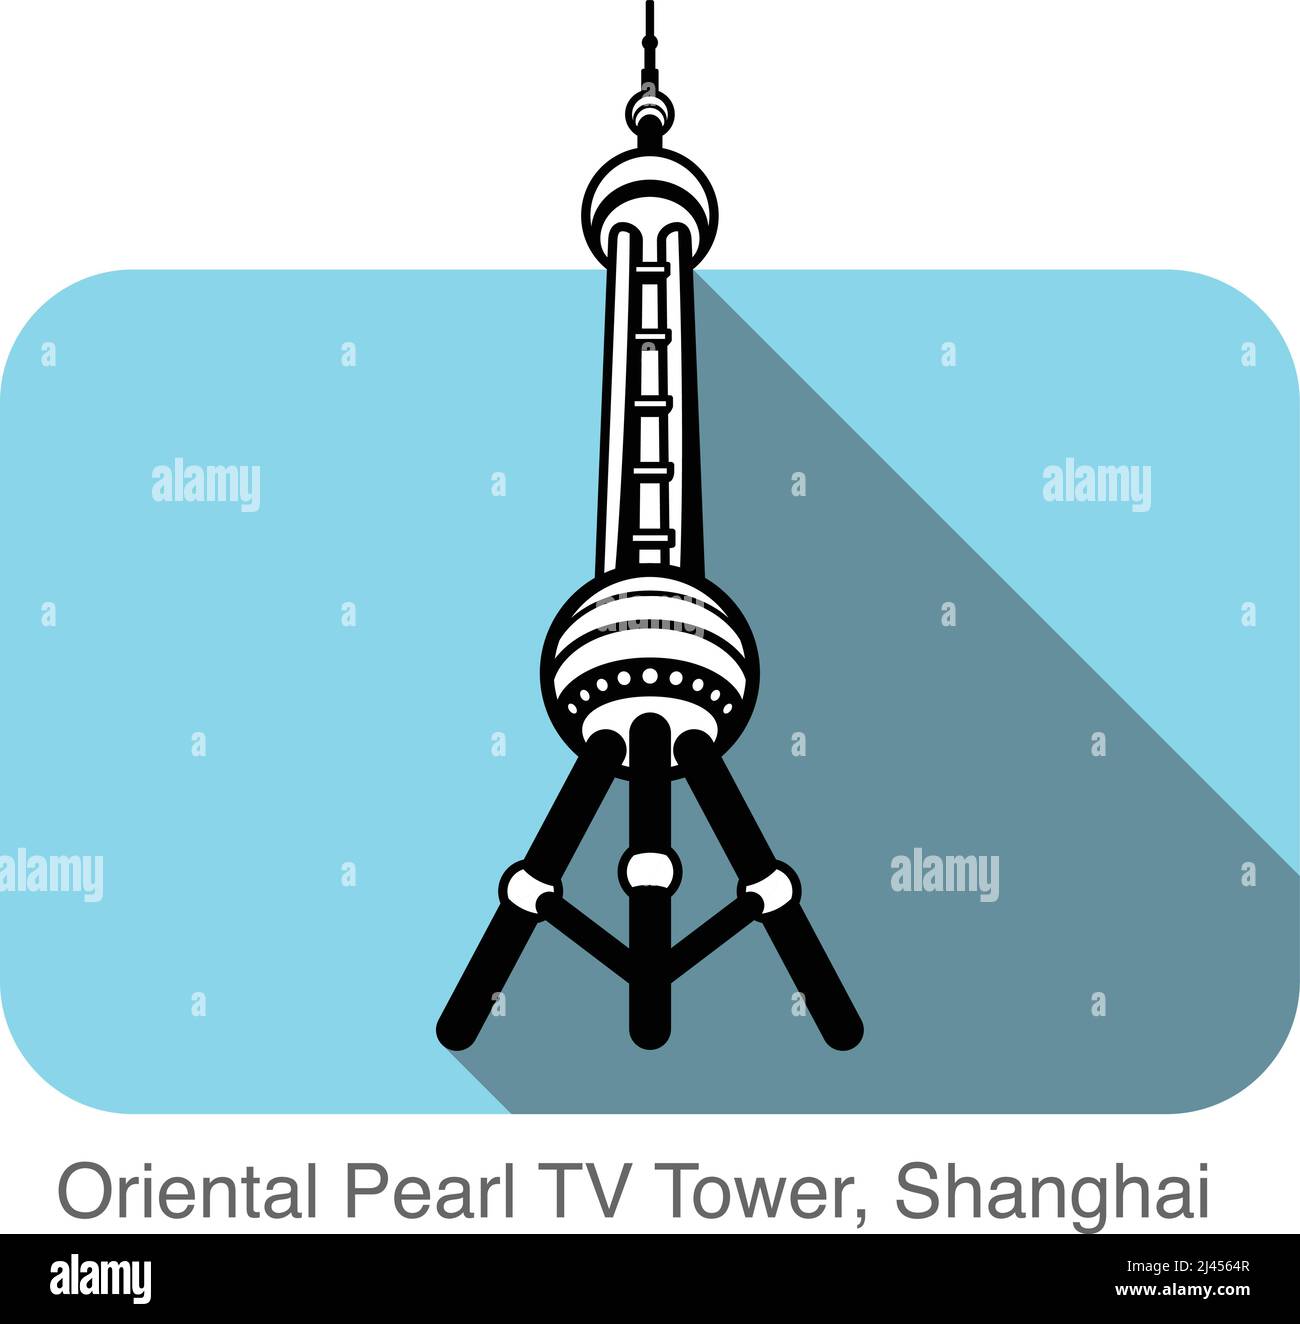 Oriental Pearl TV Tower, Shanghai, berühmtes Wahrzeichen flaches Icon-Design, berühmter landschaftlicher Ort Stock Vektor